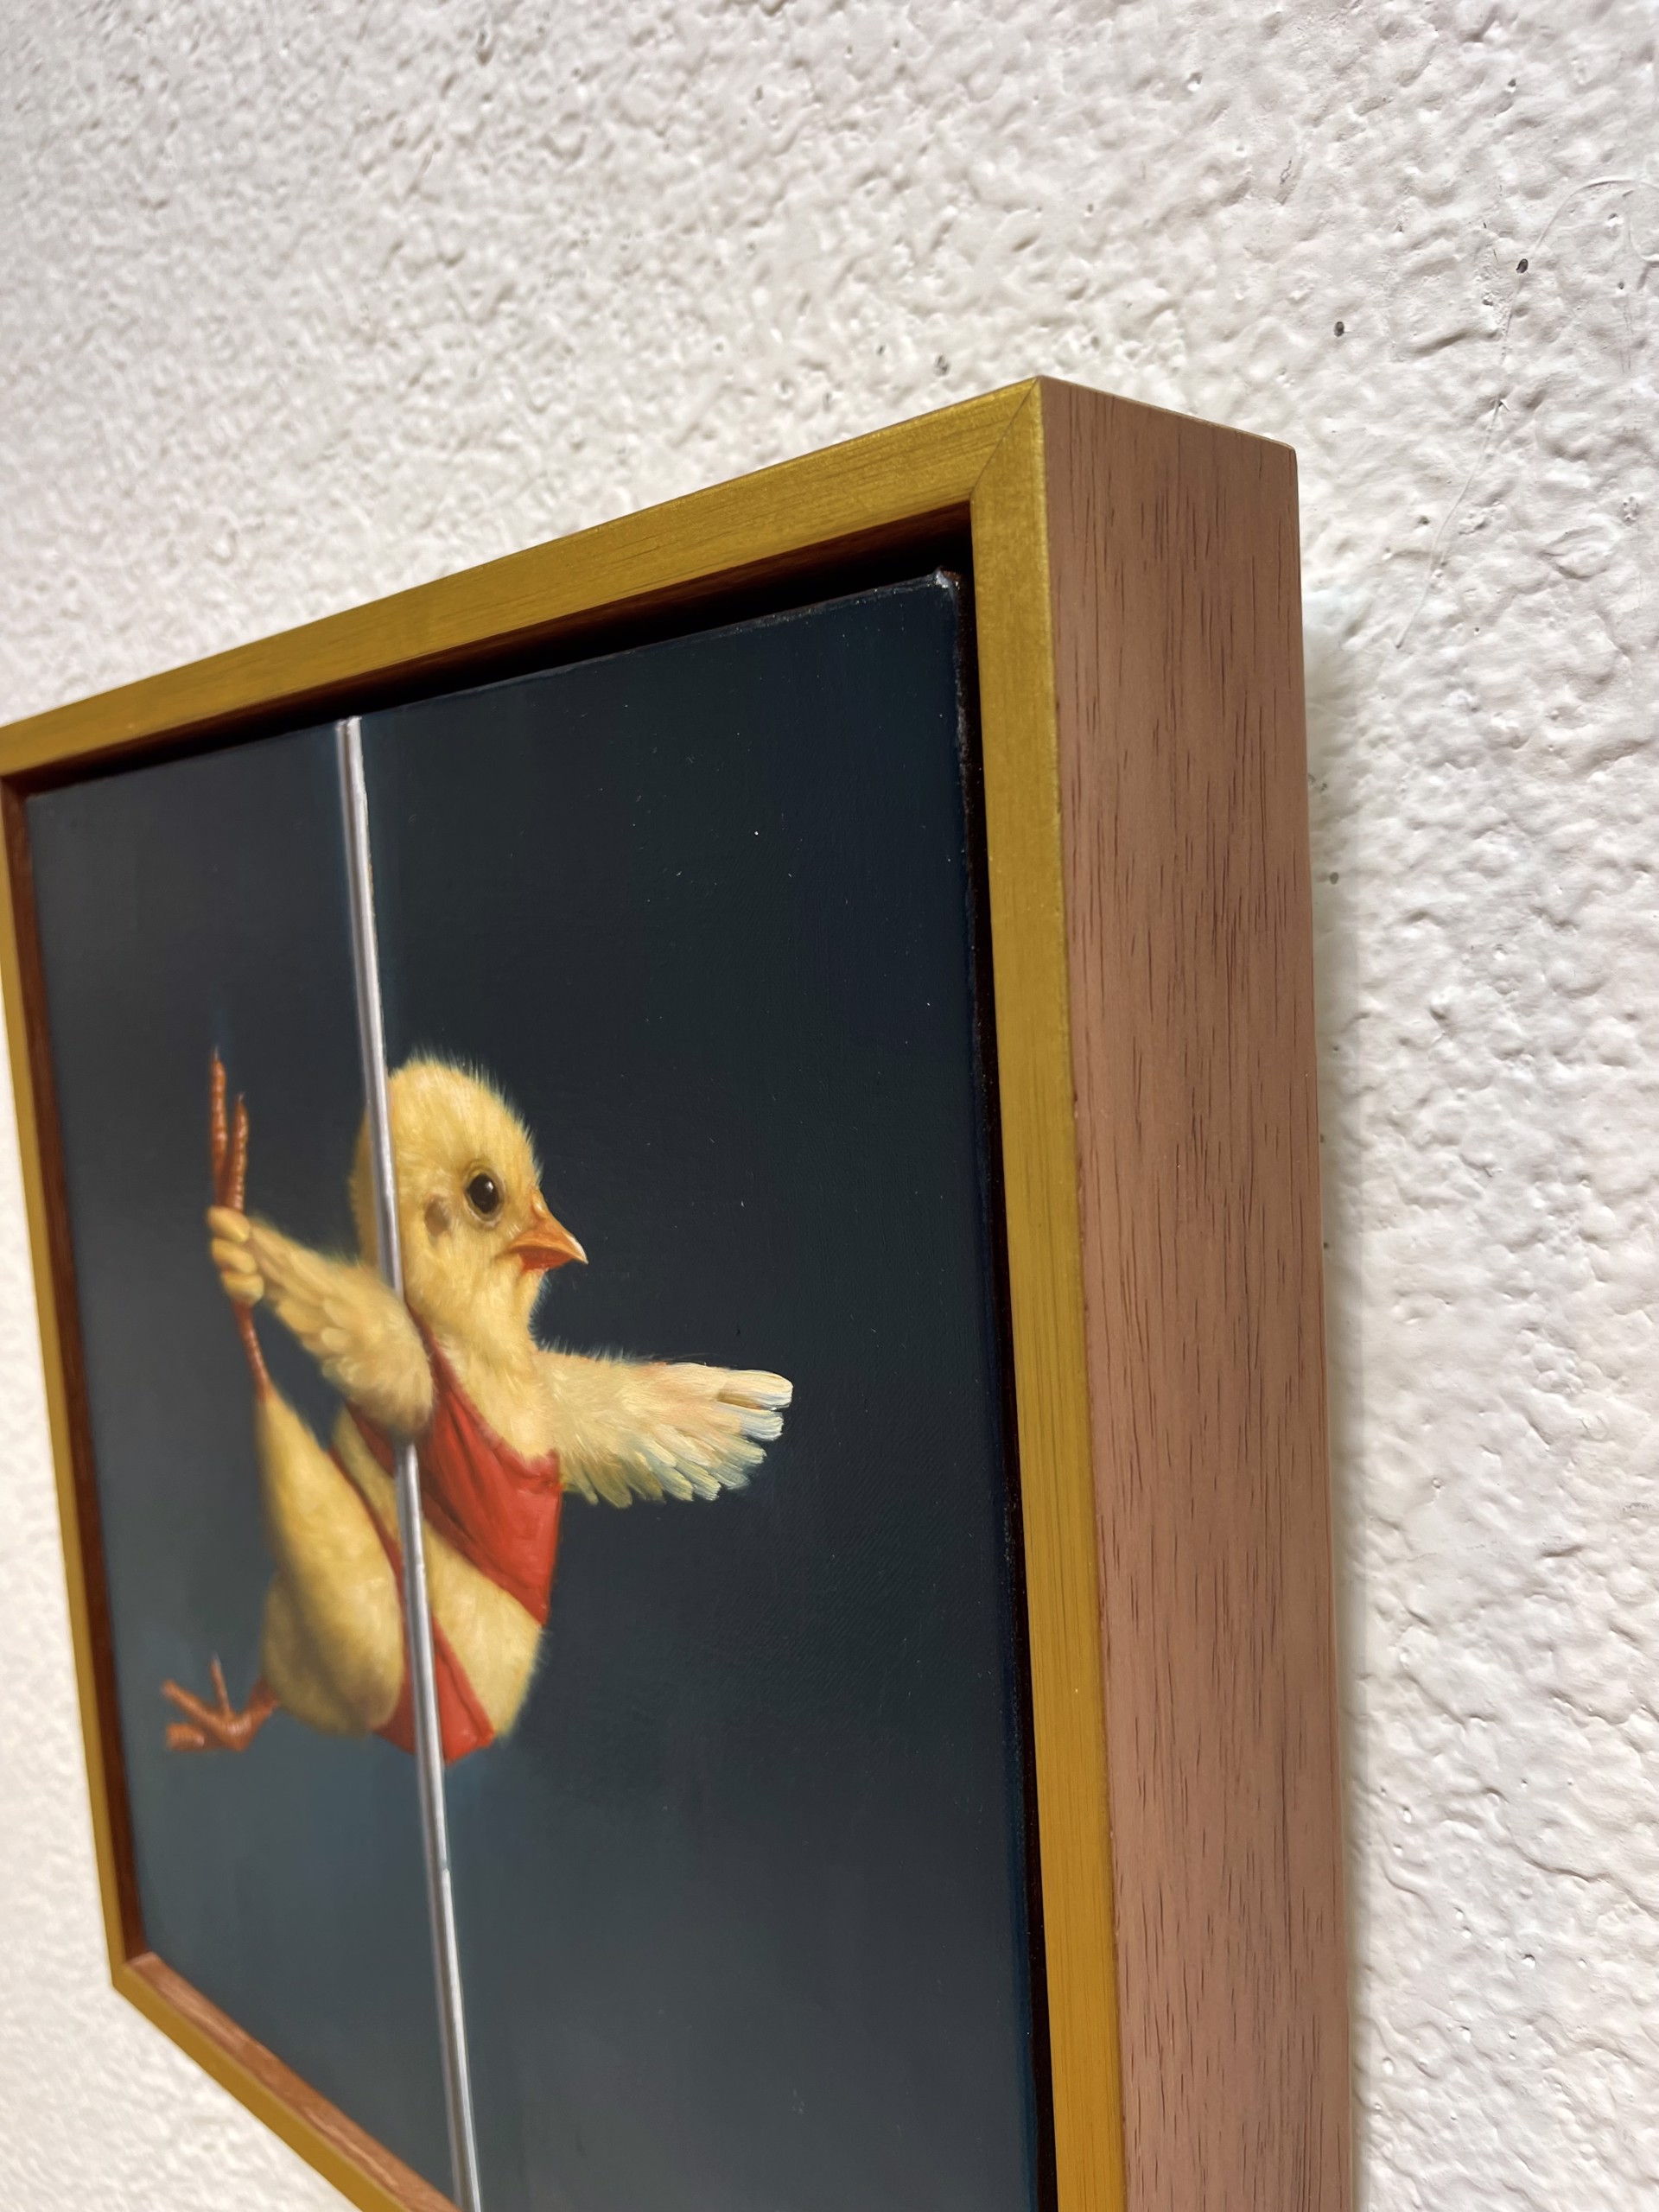 Pole Chick - Rocket Woman by Lucia Heffernan